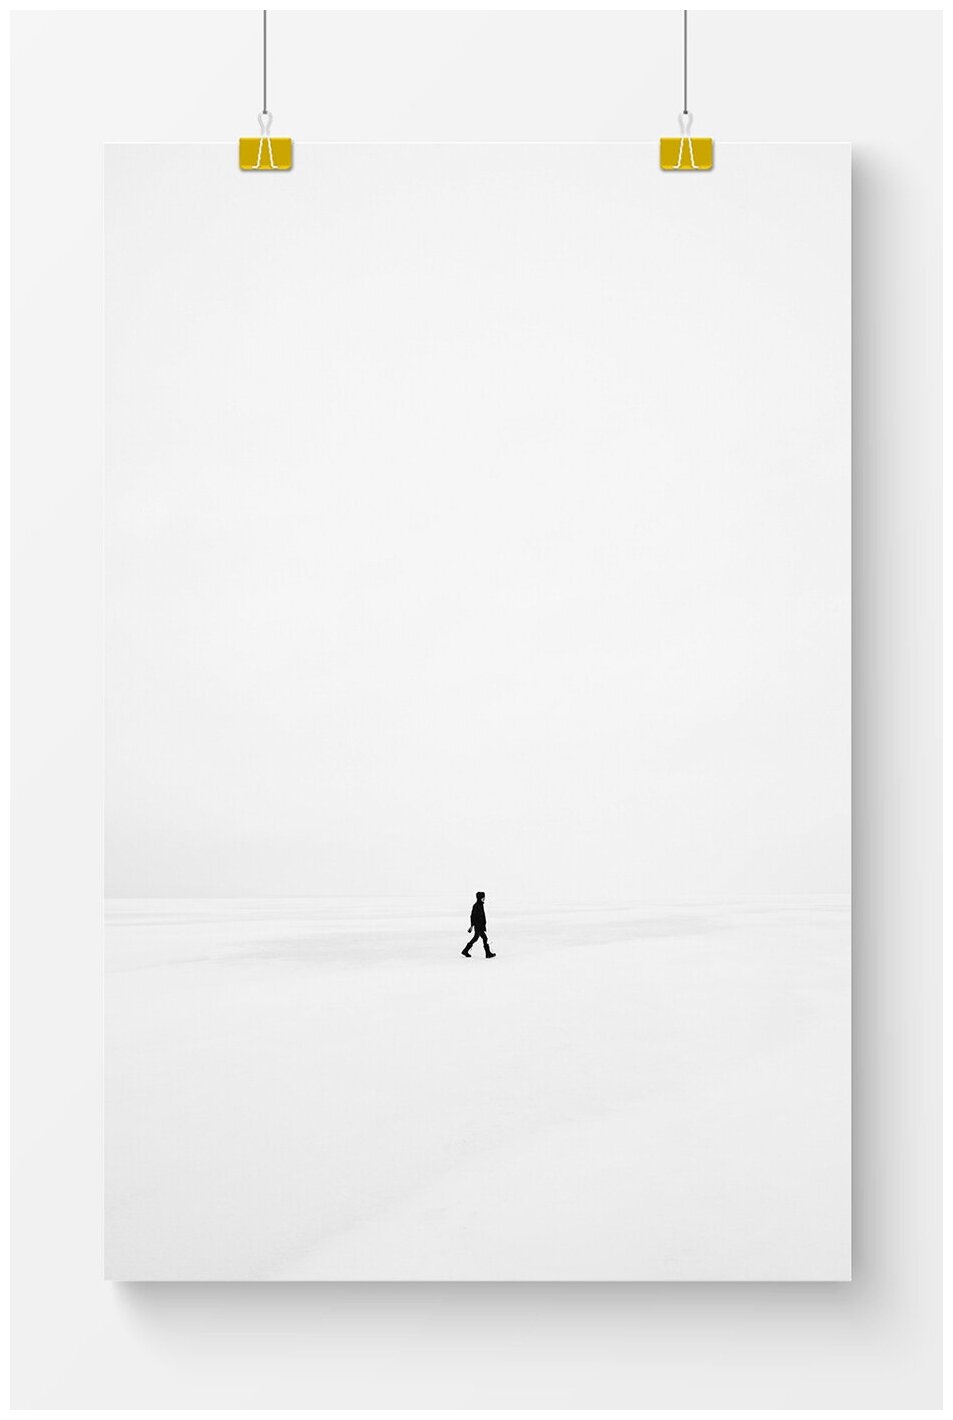 Постер на стену для интерьера Postermarkt Одинокий человек, размер 60х90 см, постеры картины для интерьера в тубусе